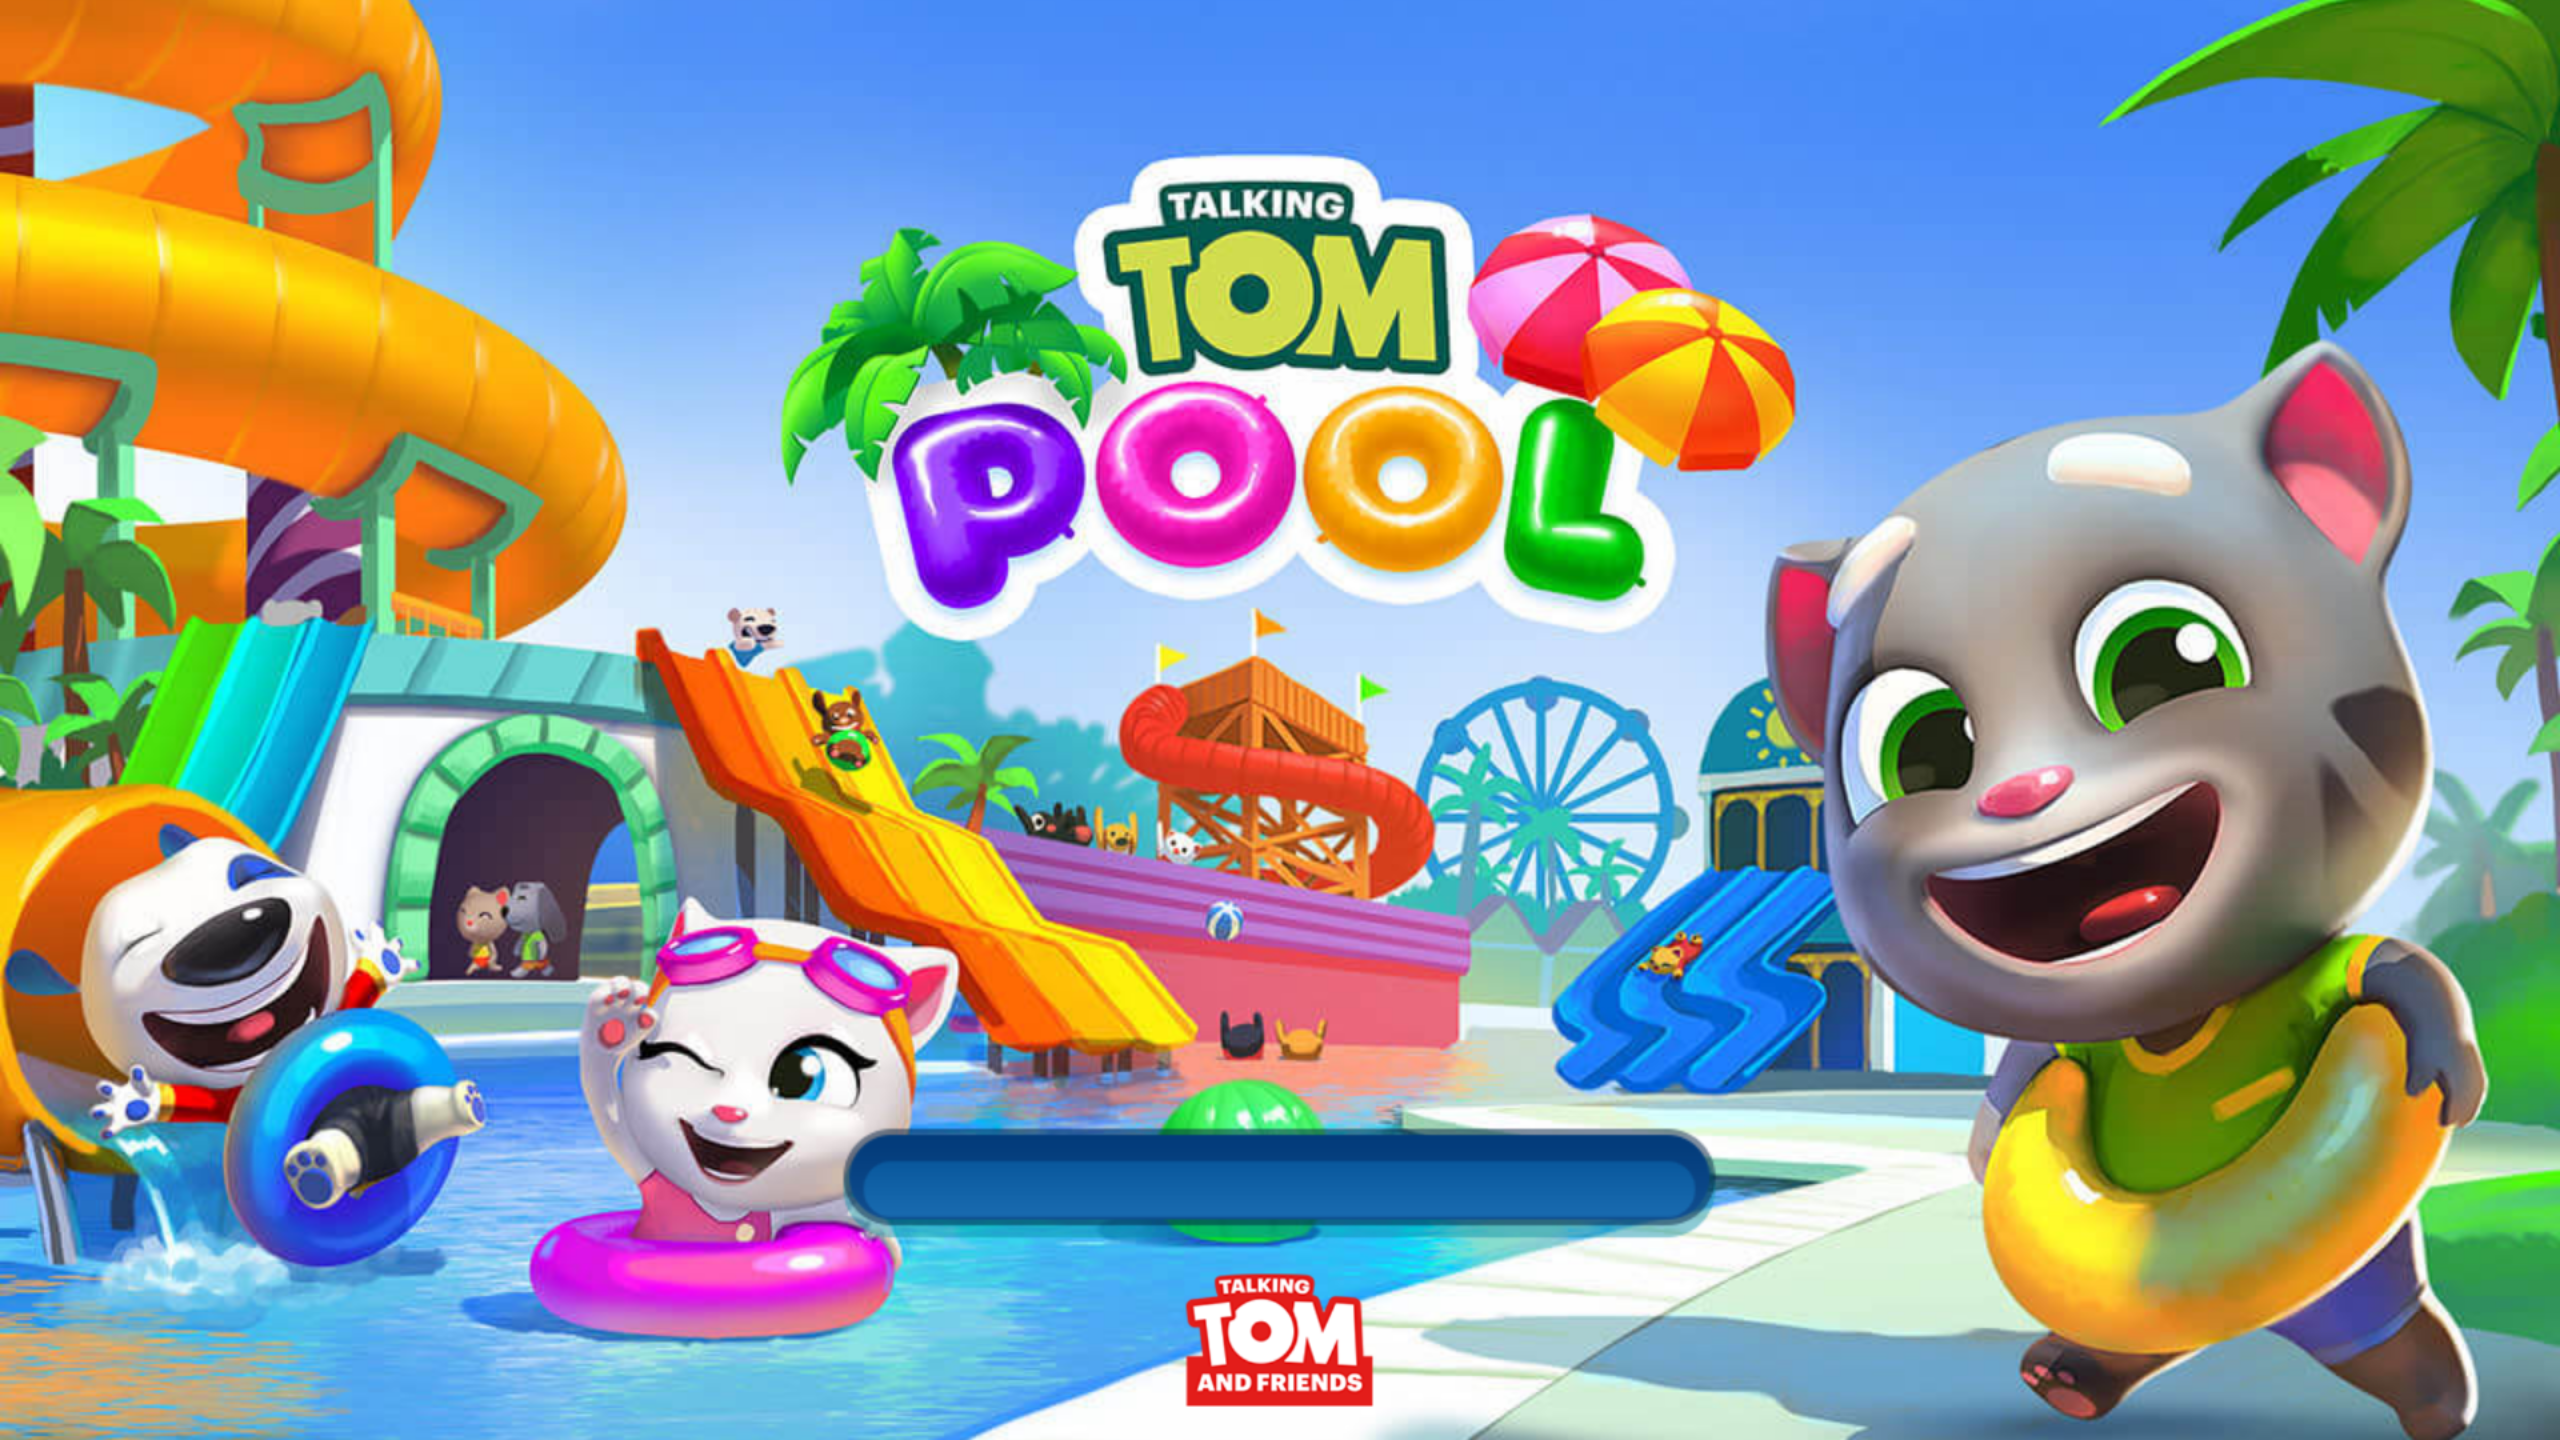 Том аквапарк игра. Игра аквапарк Тома. Бассейн Тома игра. Игра бассейн говорящего Тома. Игра бассейн Тома игра бассейн Тома.